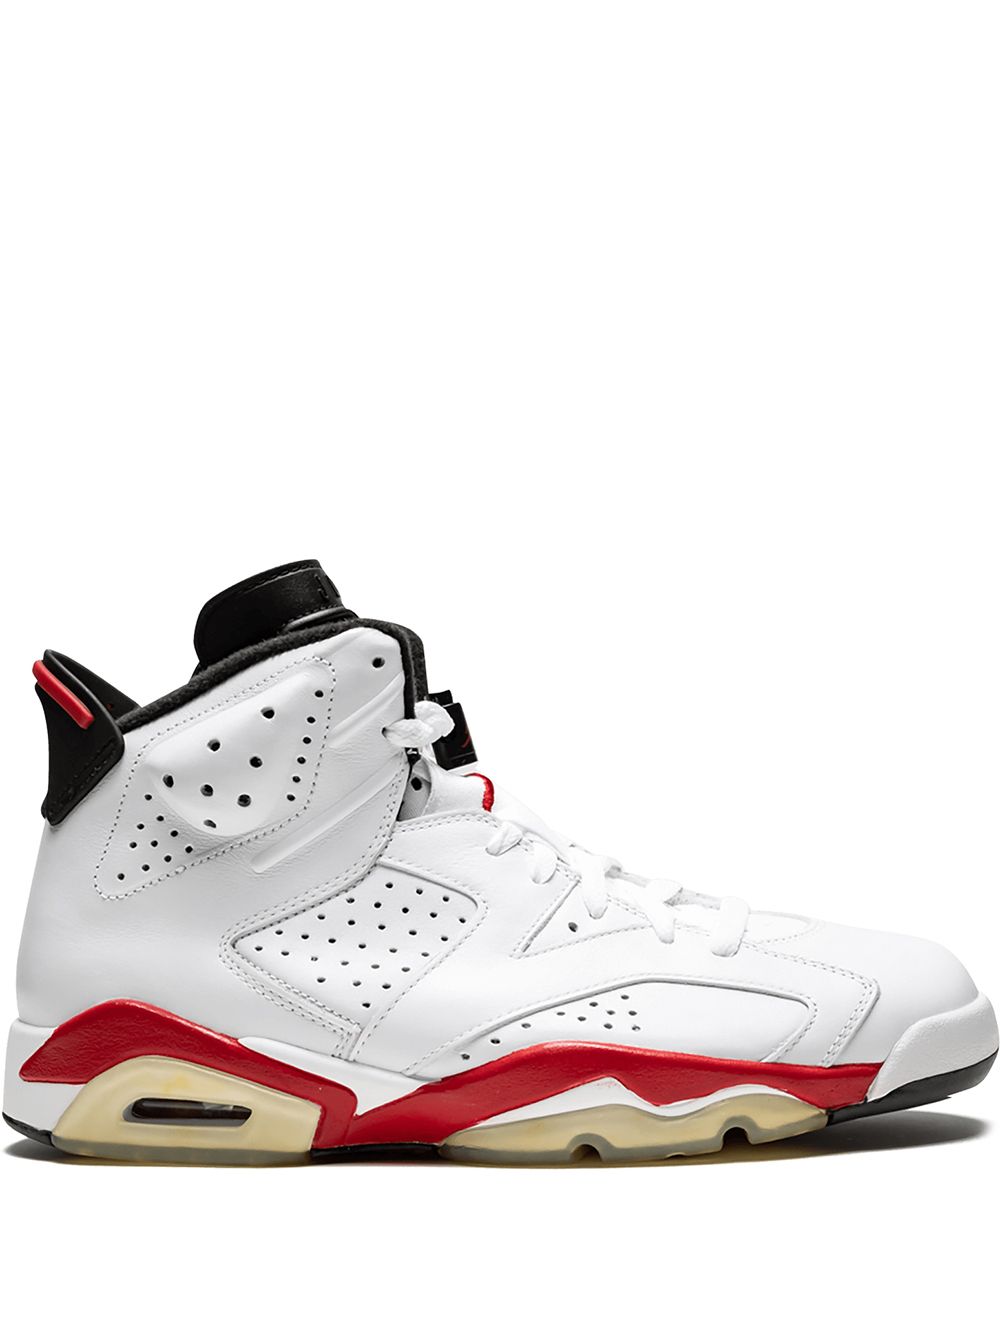 Jordan Air Jordan 6 Retro sneakers - White